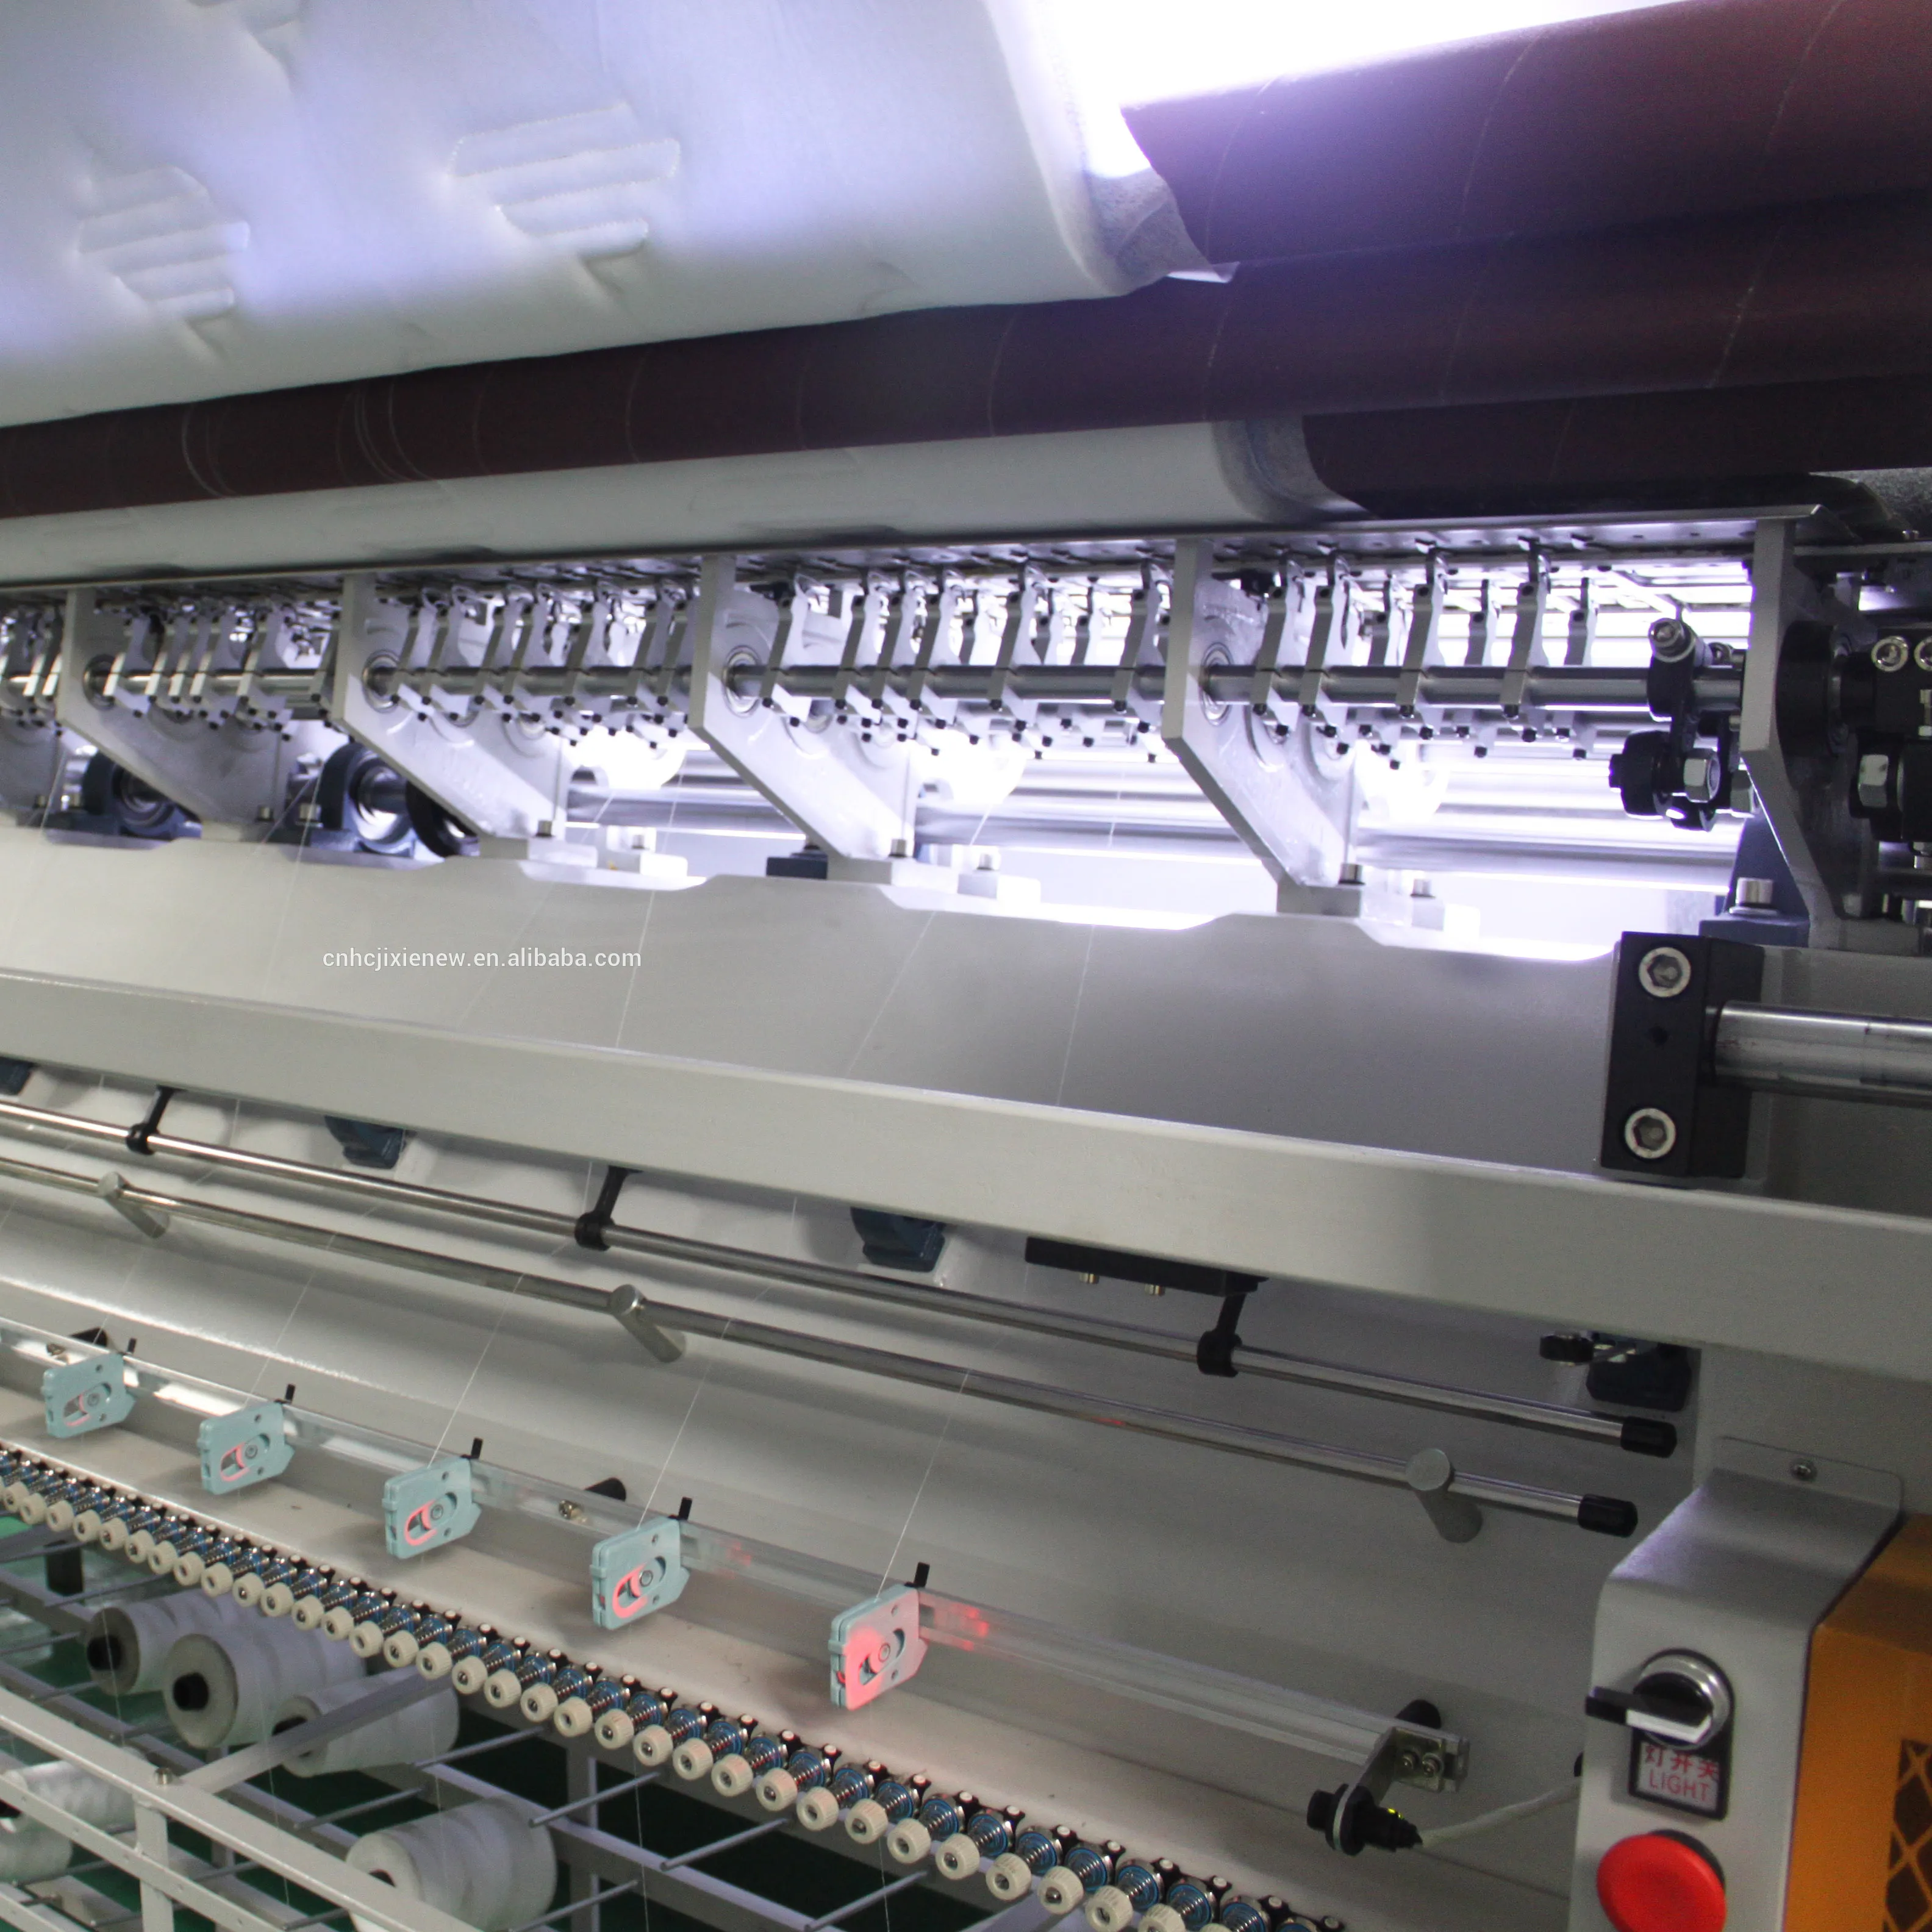 O multi-agulha máquina estofando shuttle-livre para o cobertor colchão indústria do vestuário